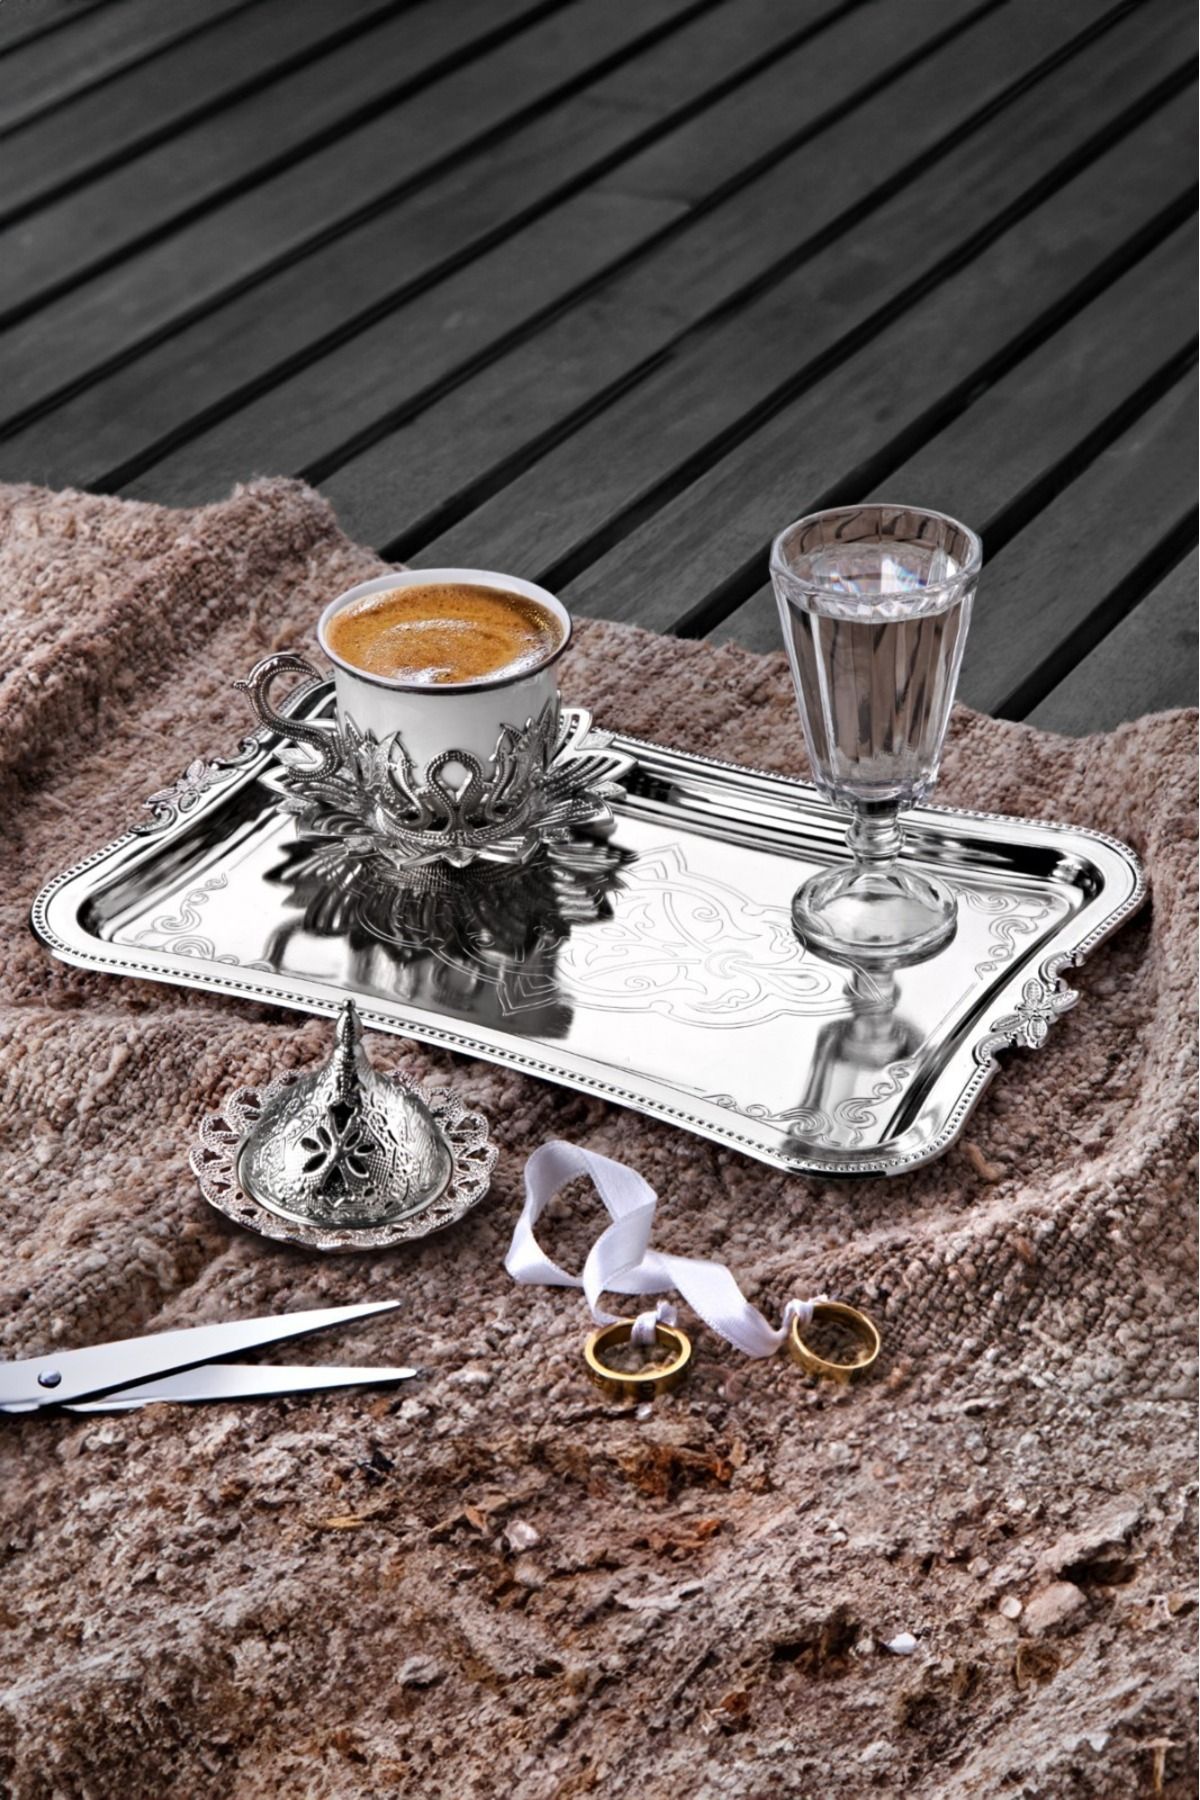 WuuQ Lüx Tek Kişilik Porselen Türk Kahvesi Takımı Set -Gelen Damat Lokumluklu veya Şekerlikli Gümüş Renk